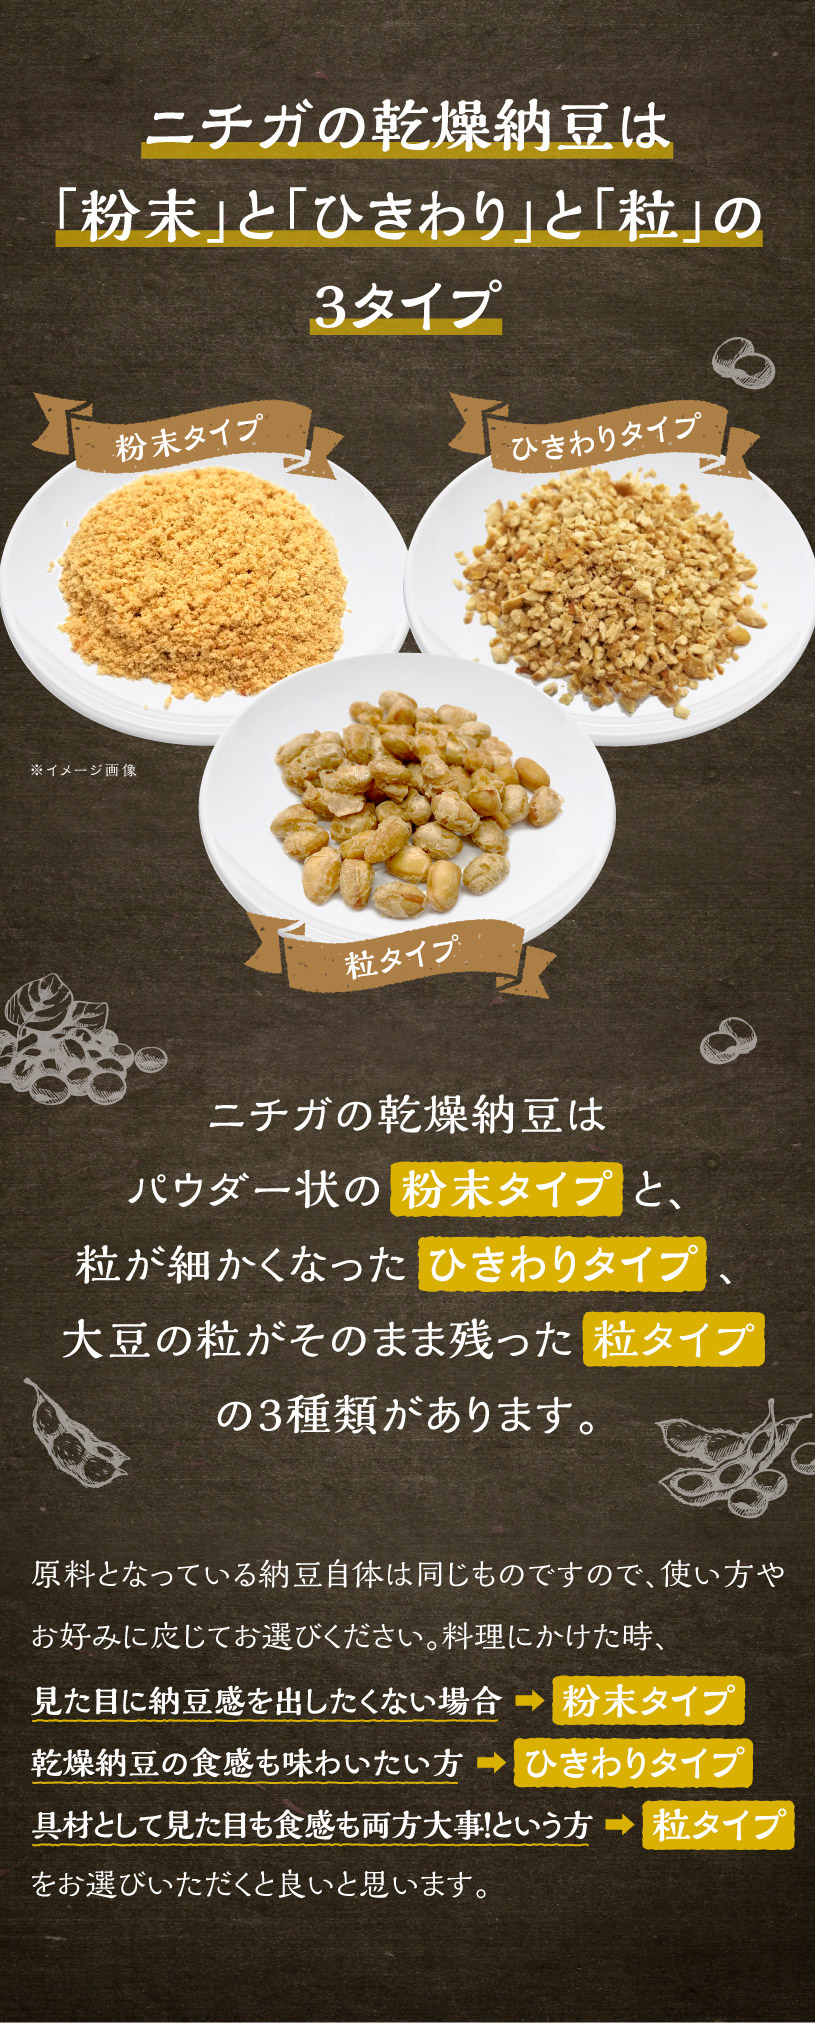 国産納豆（ひきわり） 110ｇ 国産大豆100％使用 Hiki wari natto 生きている納豆菌93億個・ナットウキナーゼ活性・大豆イソフラボンアグリコン 含有 [02] NICHIGA(ニチガ)